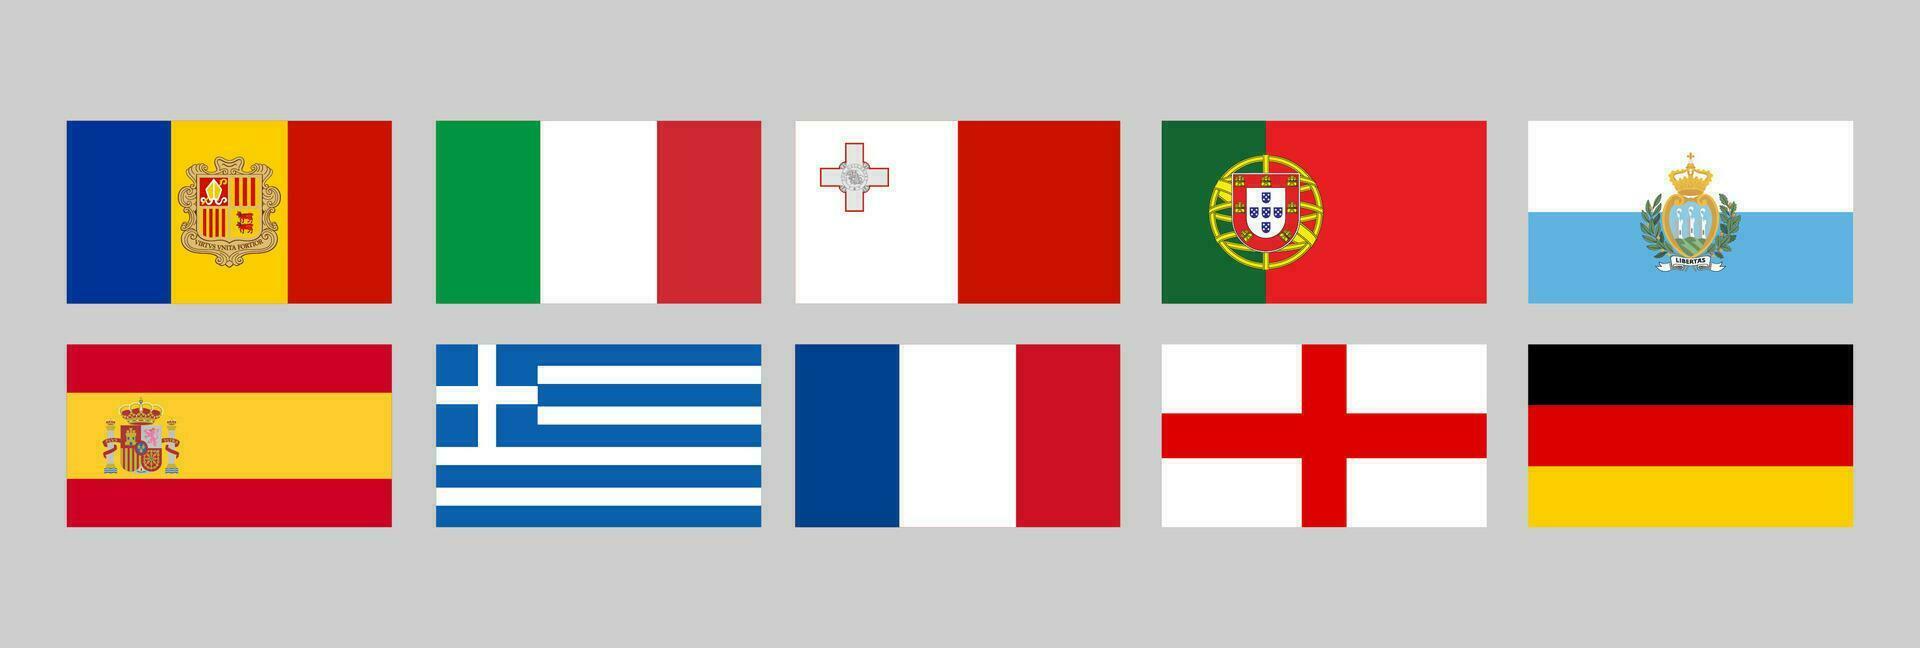 europeo nazione bandiere, andorra, Italia, Malta, Portogallo, san marino, Spagna, Grecia, Francia, Inghilterra, Germania vettore